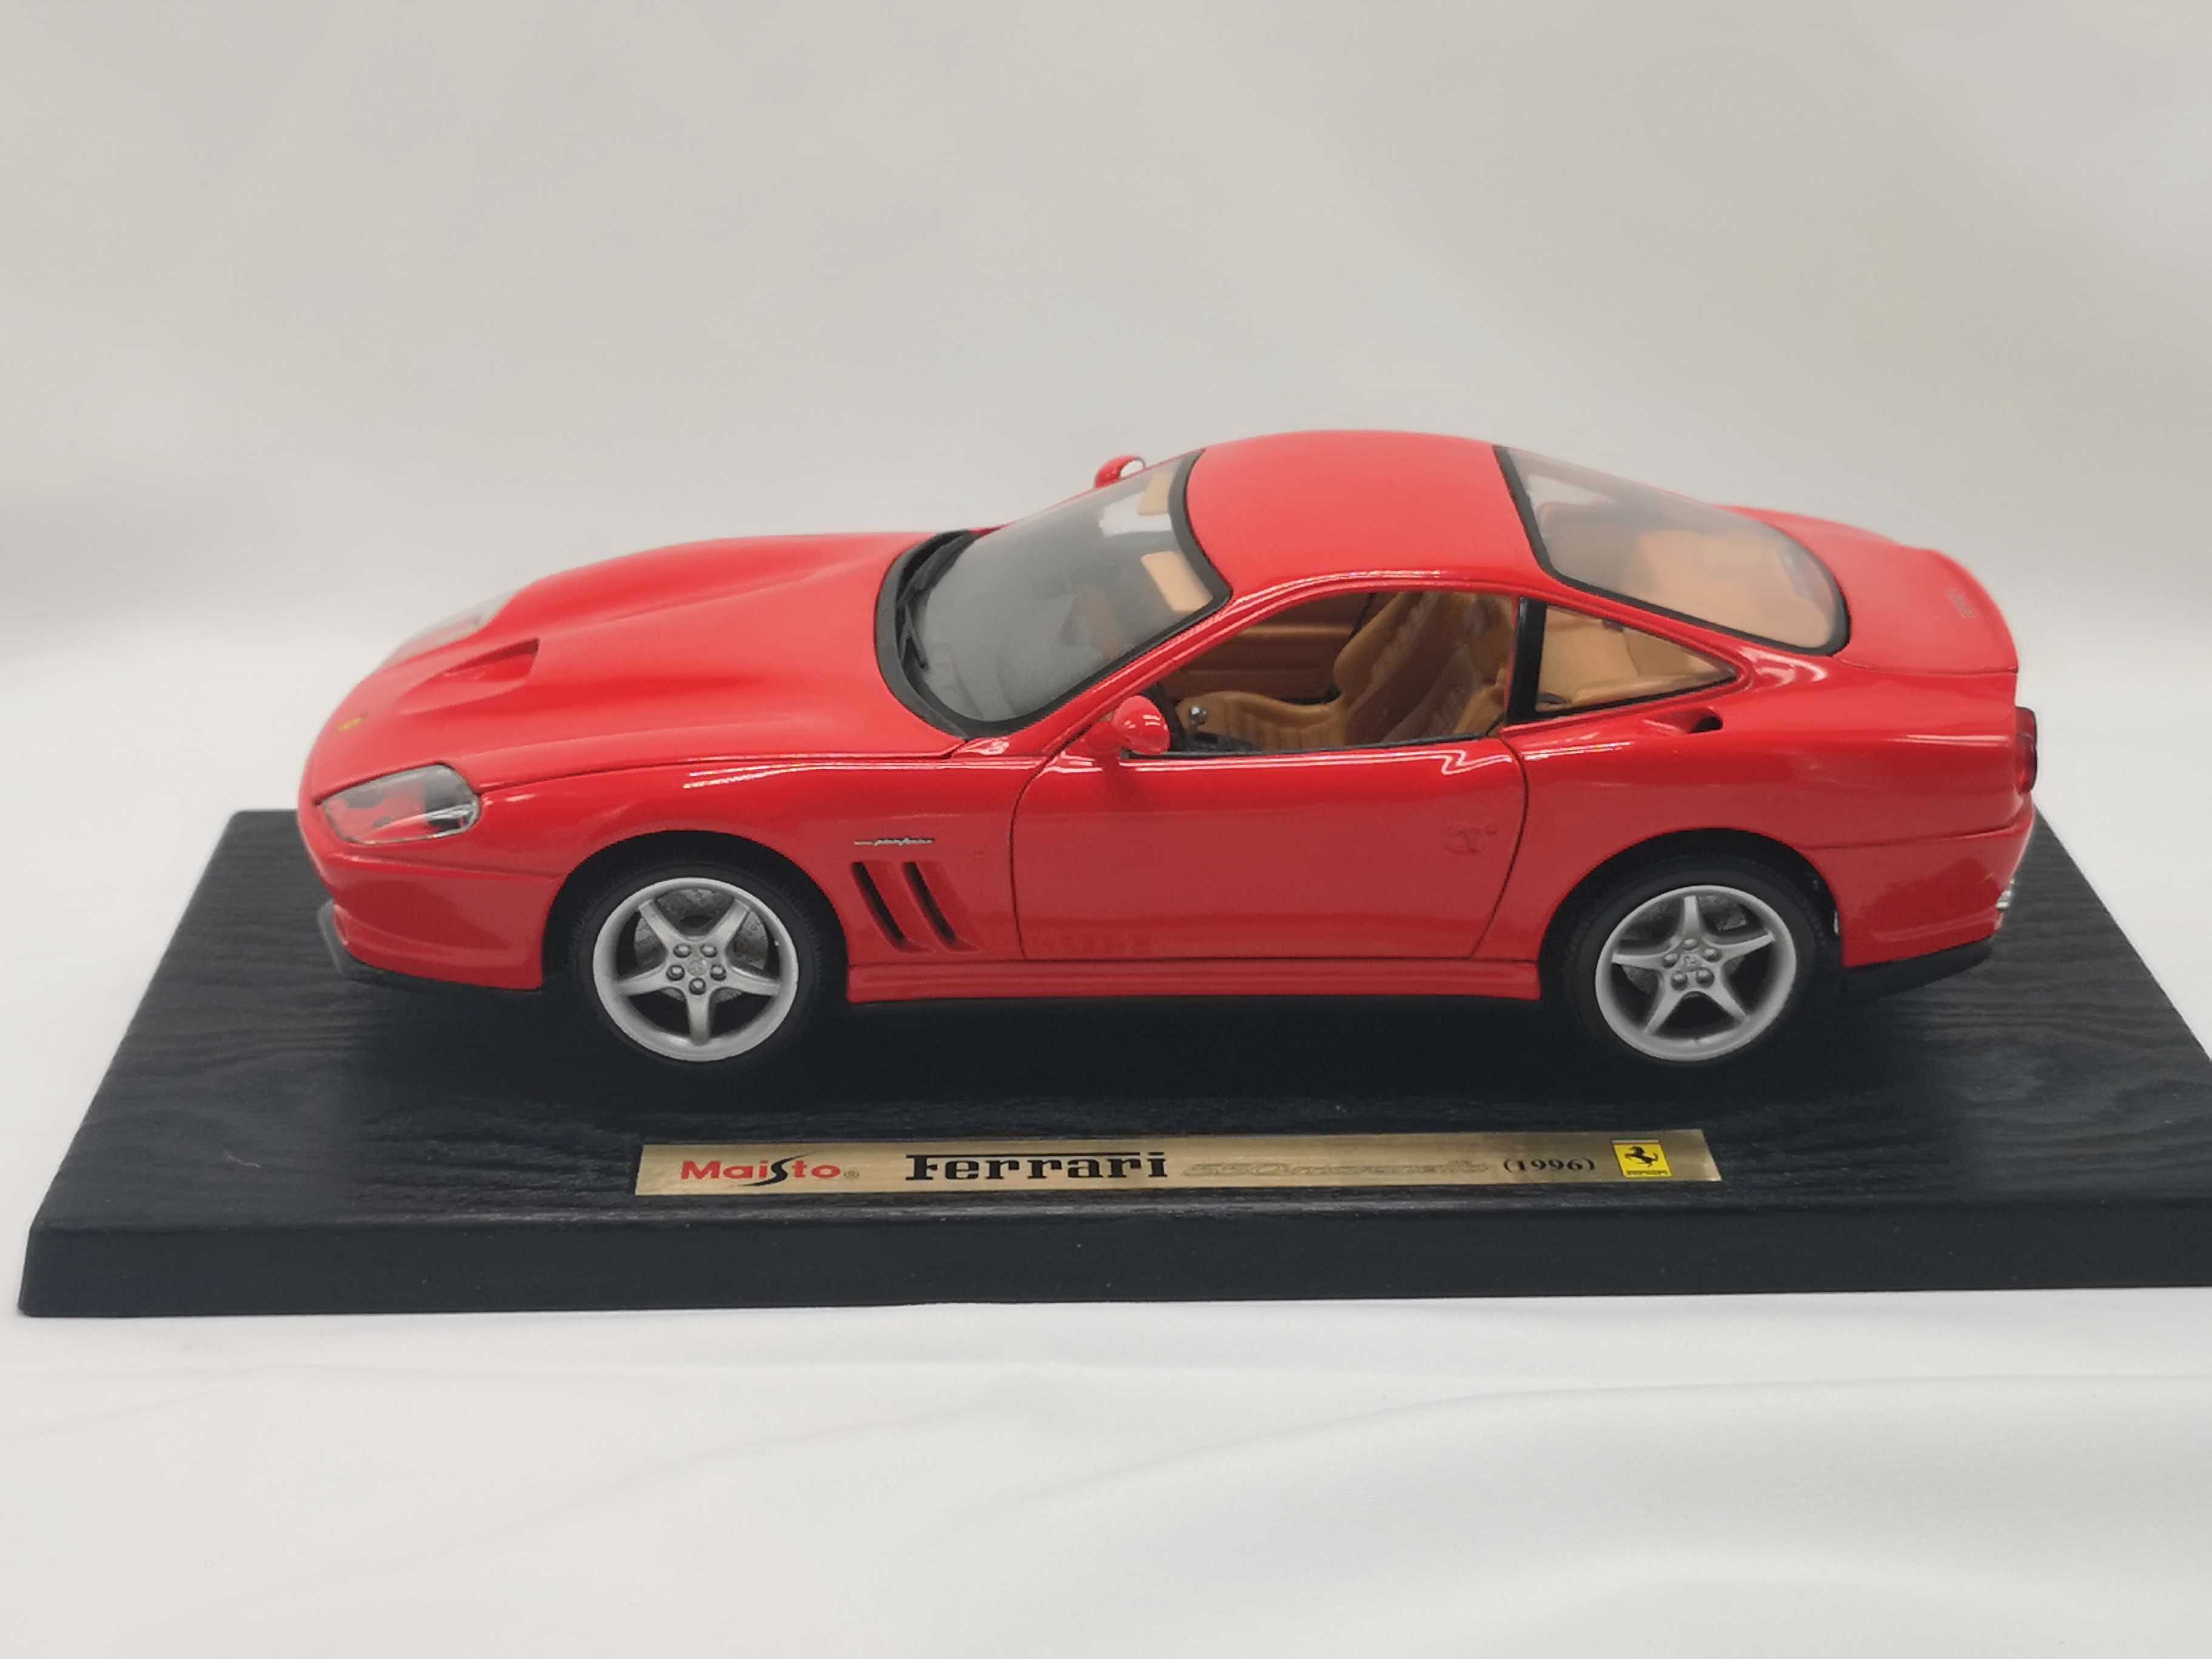 Linda miniatura Ferrari 550 Maranello - 1996 Maisto 1/18